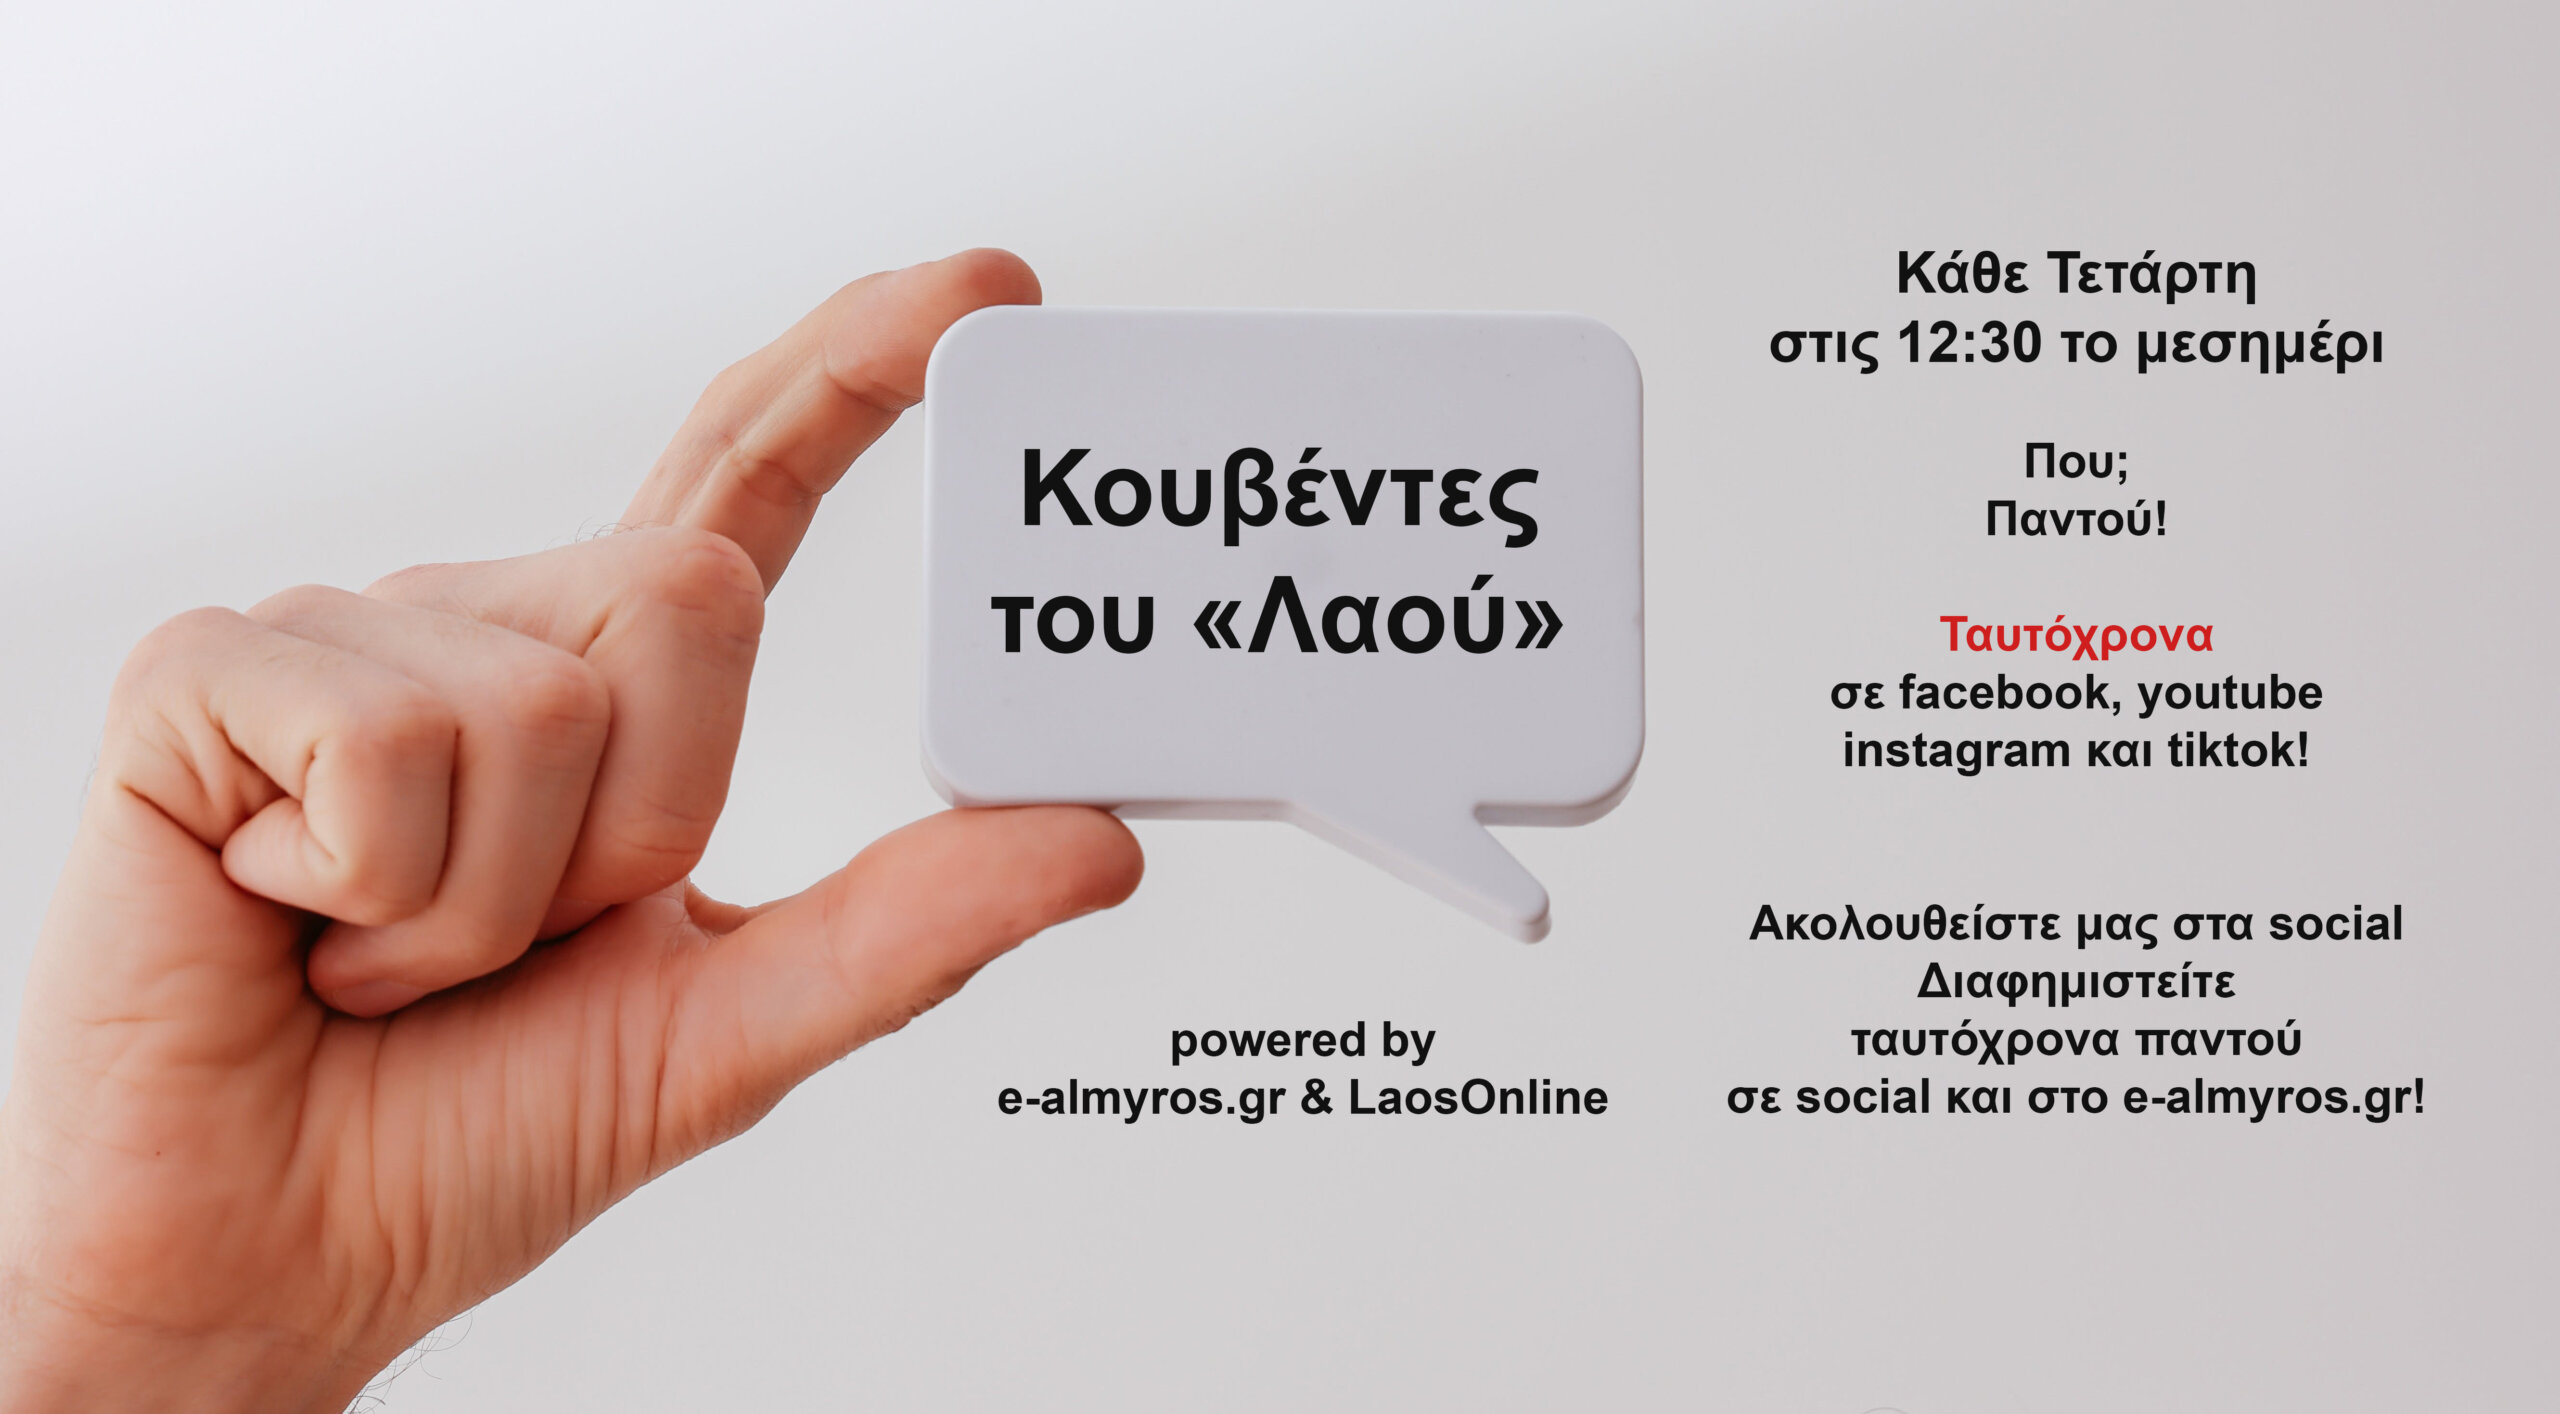 Δυο νέες εκπομπές στο e-almyros.gr – Καινοτομία με ταυτόχρονη προβολή σε όλα τα social media